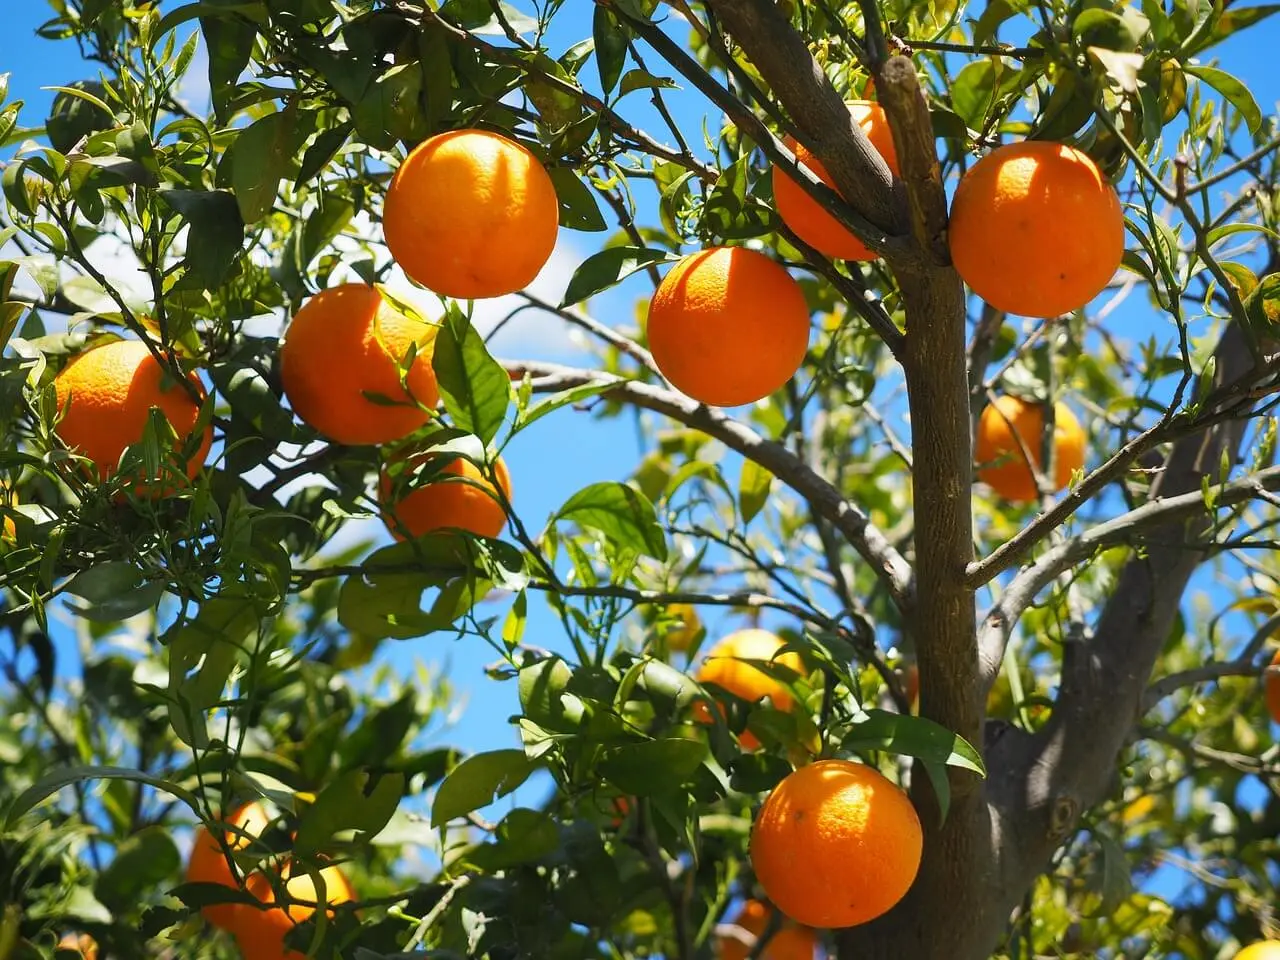 Pohon jeruk rimbun